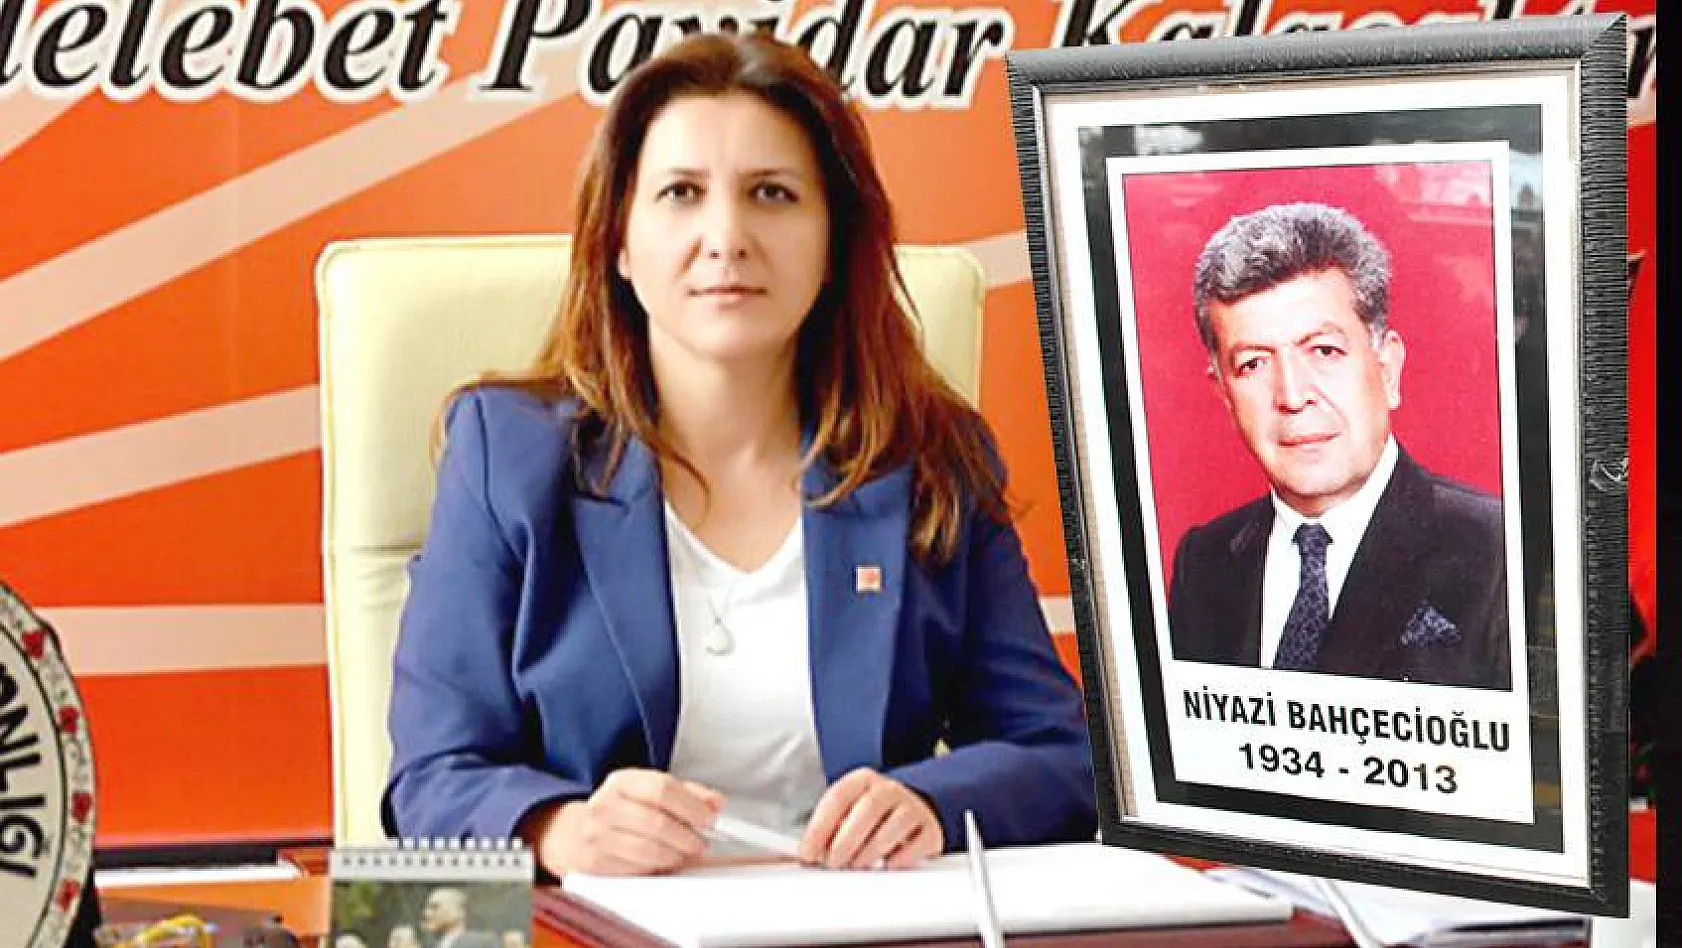 CHP İl Başkanı Özer'den, Bahçecioğlu açıklaması: O EFSANE BAŞKANDI